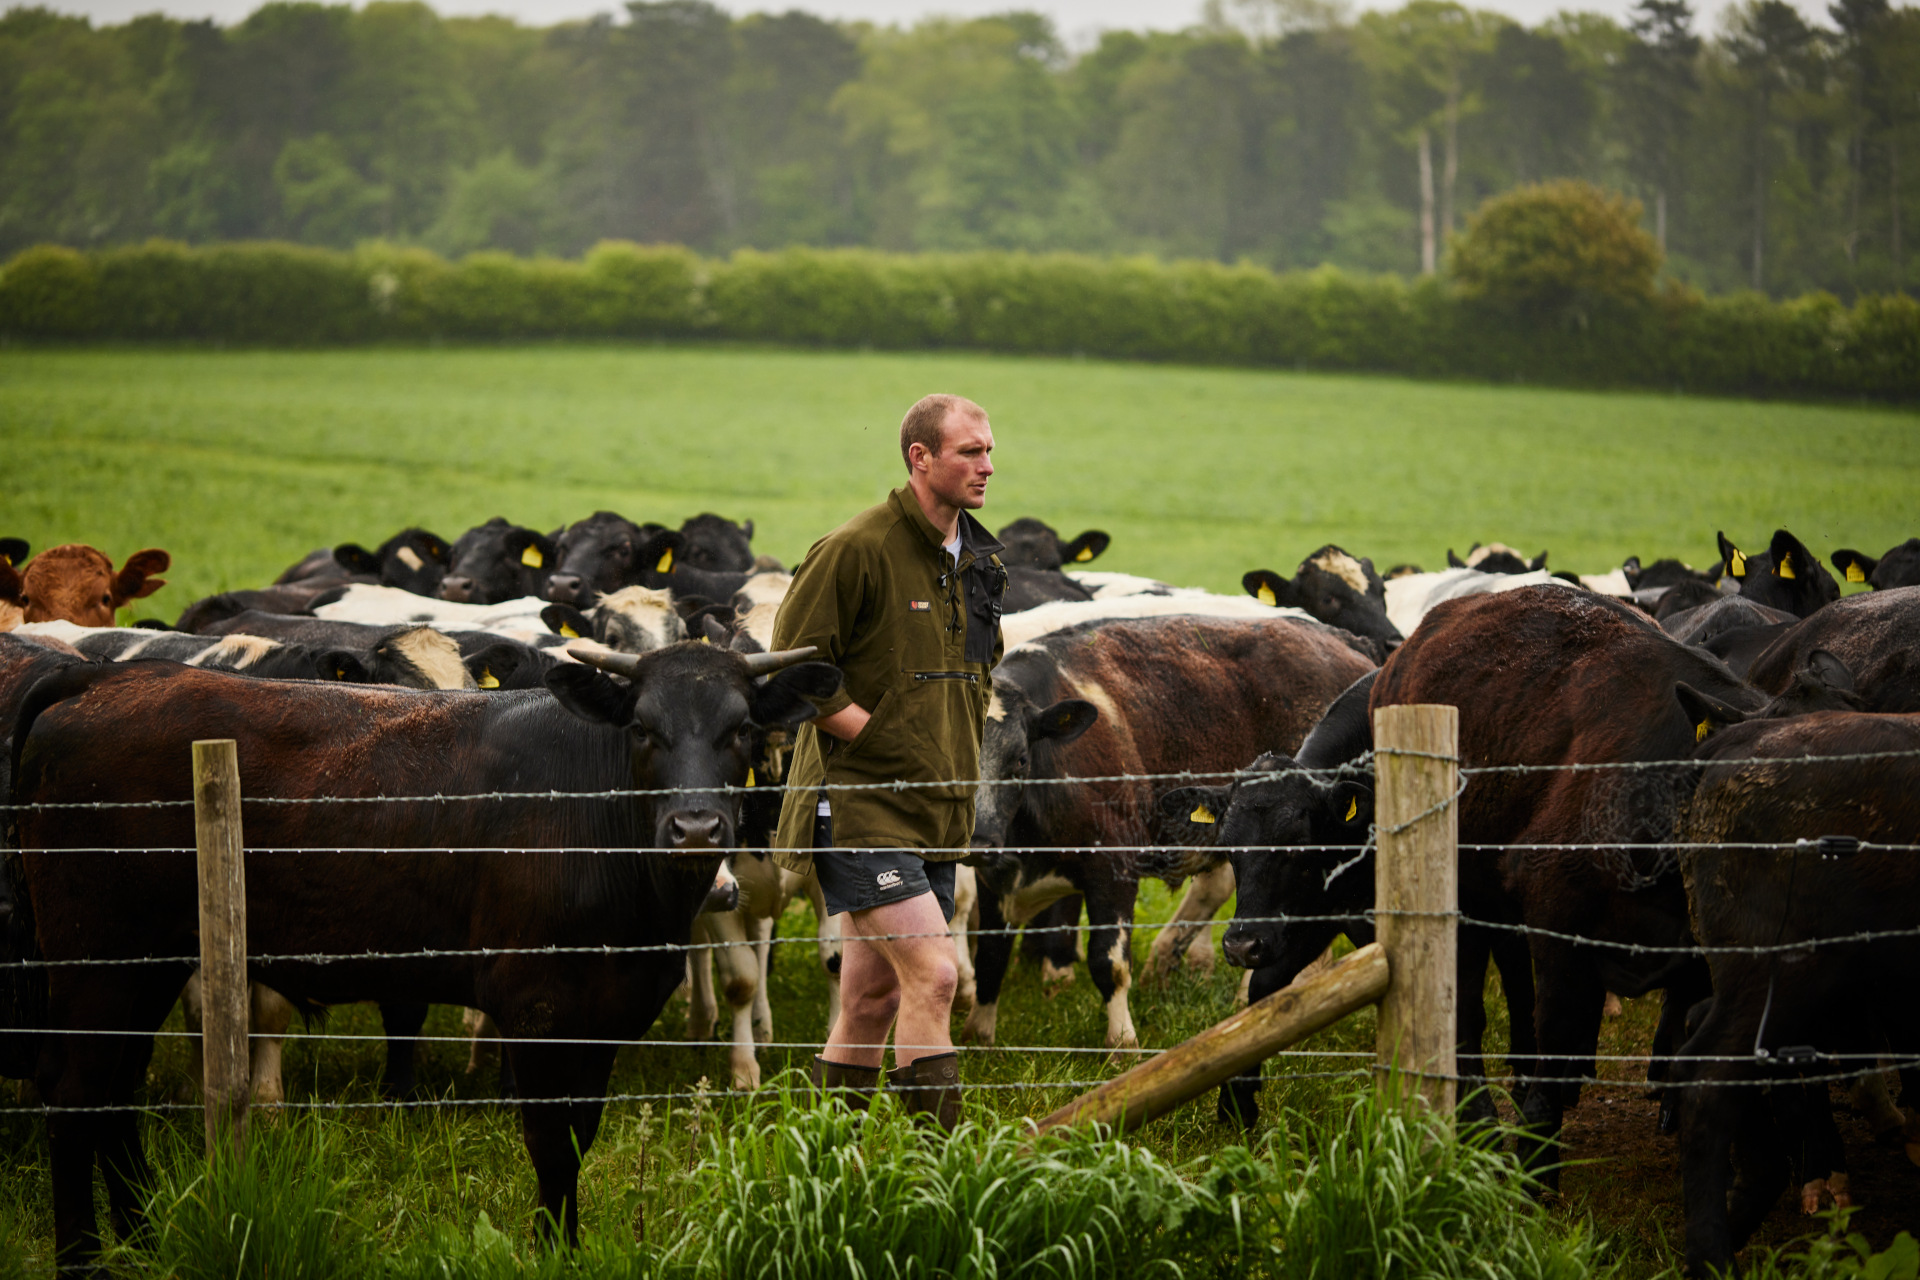 man walking in field amongst cows